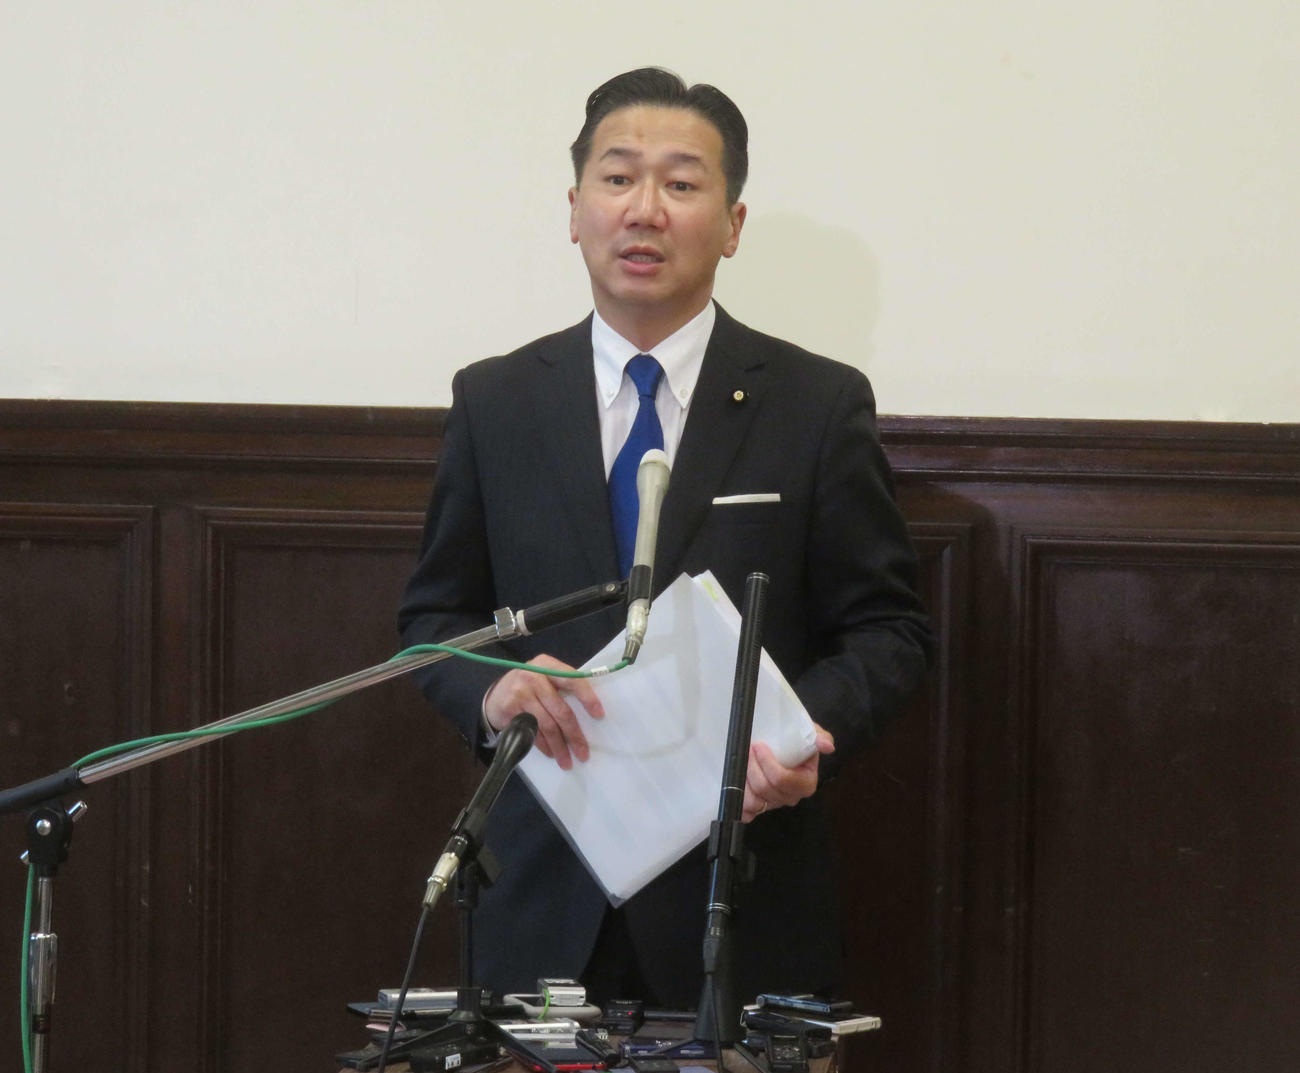 立憲民主党の福山哲郎幹事長は菅義偉首相の所信表明演説を酷評した（撮影・大上悟）